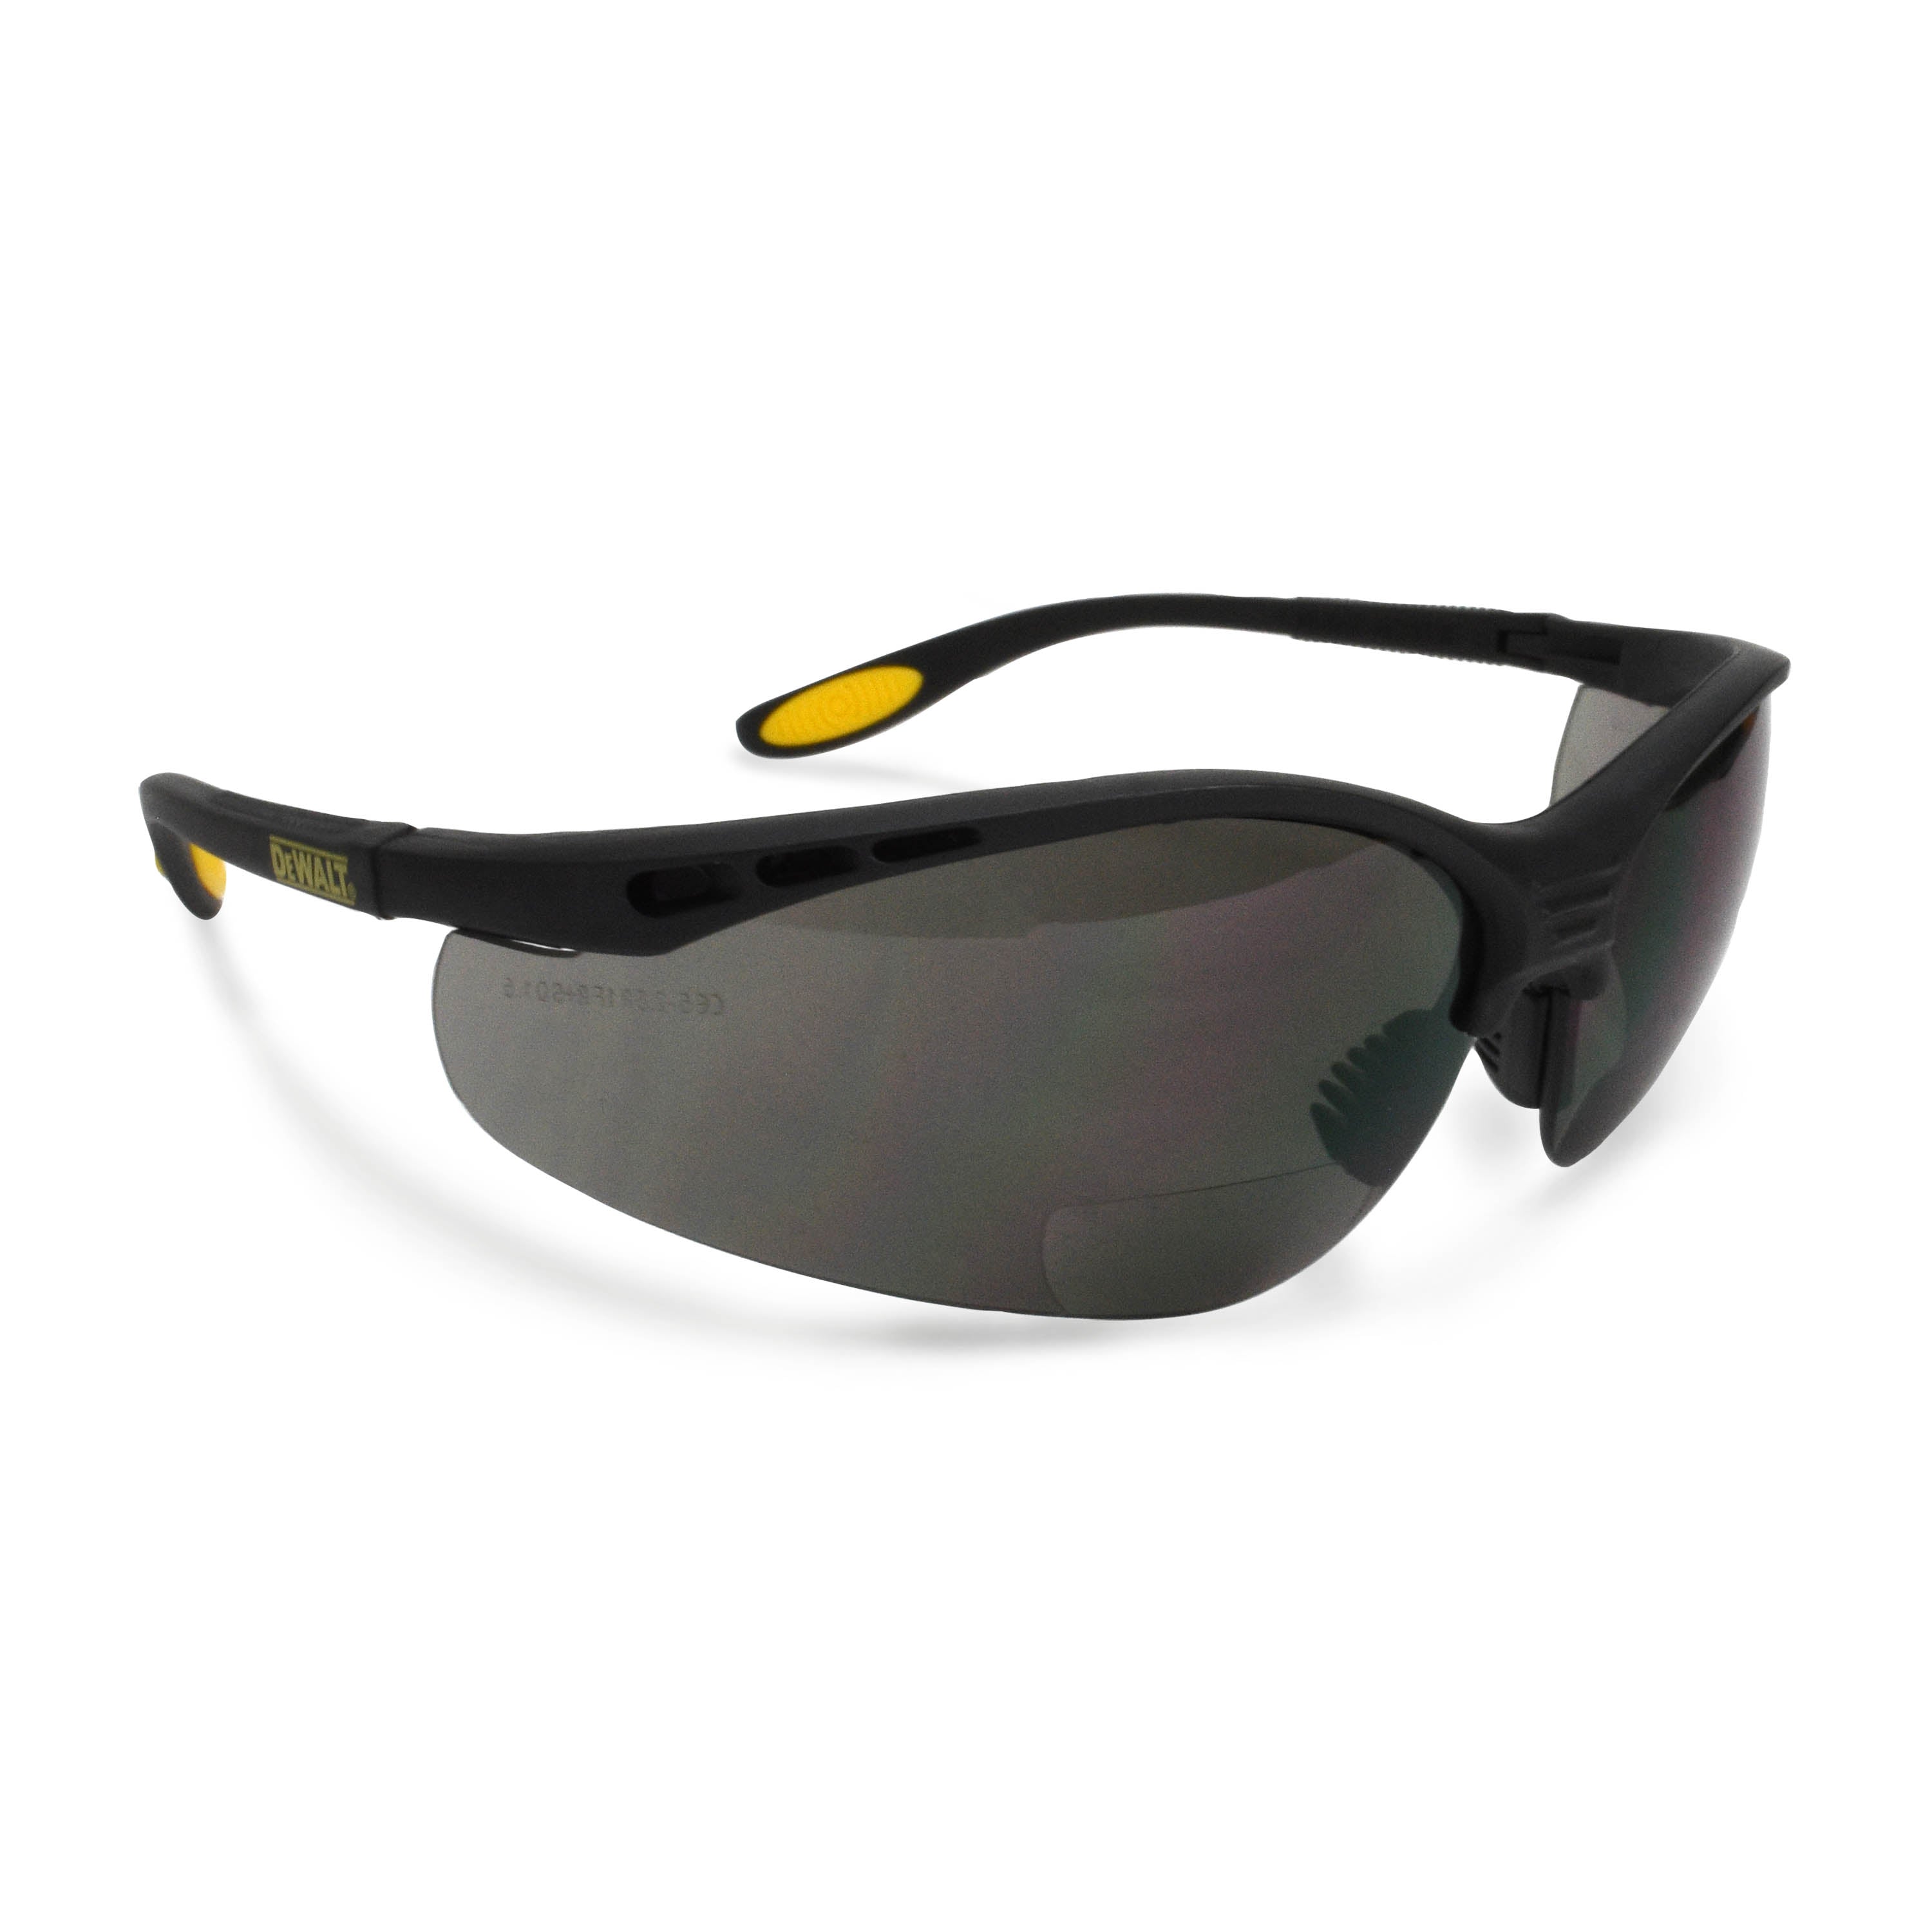 DeWALT Reinforcer Bi-Focal Glasses (Box of 12) - Smoke 2.0 Diopter Black Frame With Protective Sleeve